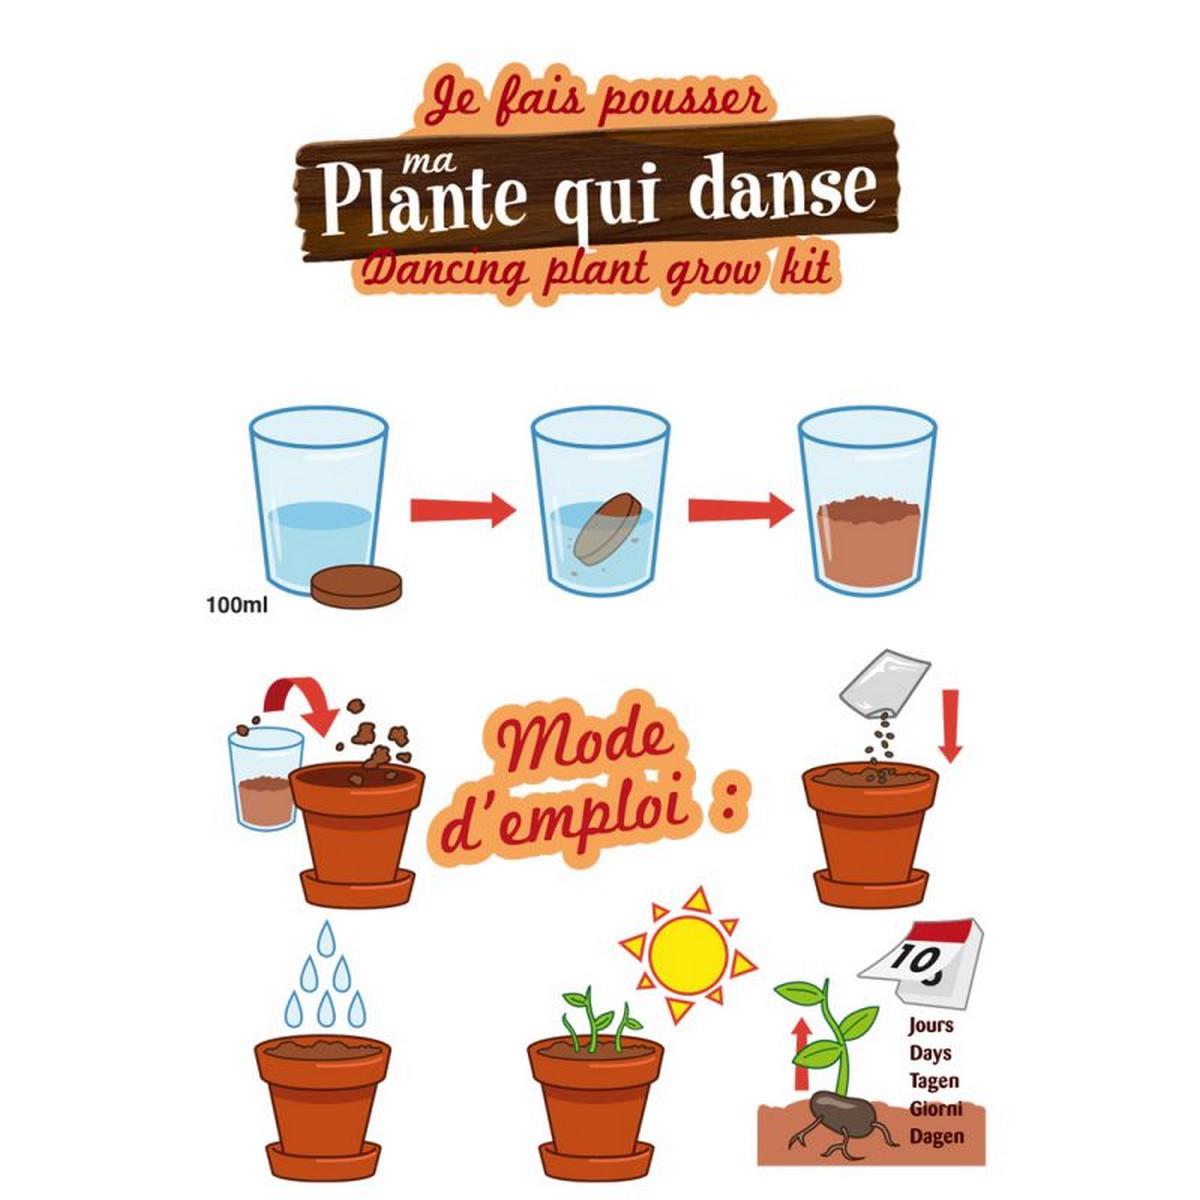 Kit de jardinage : Graines de plante qui danse - A faire pousser